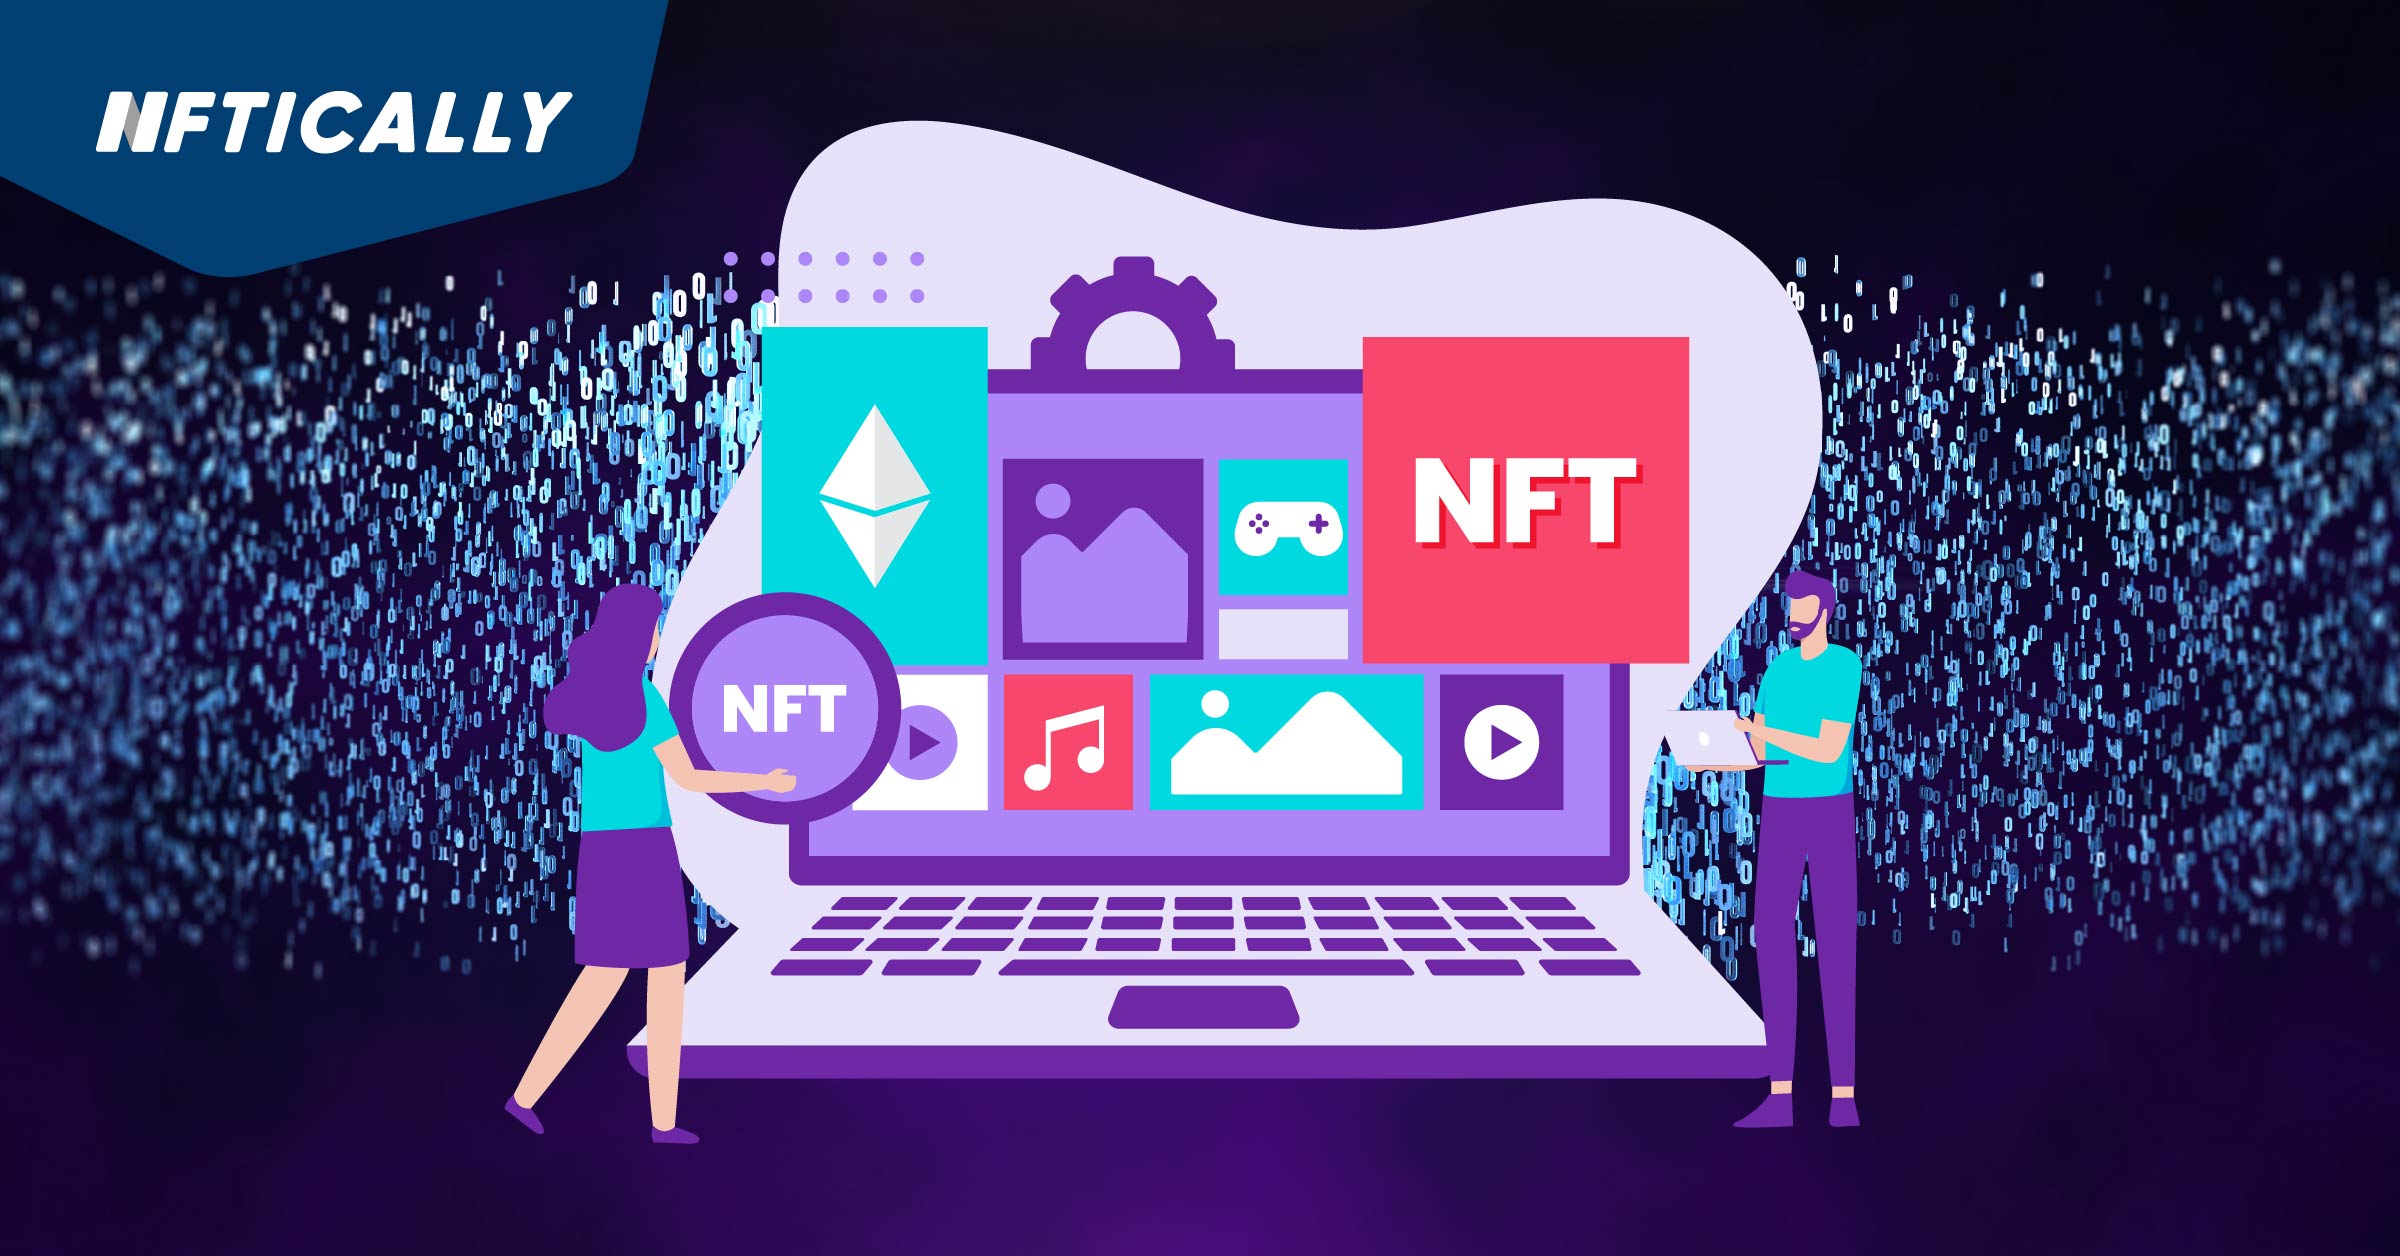 How do you build an NFT website?